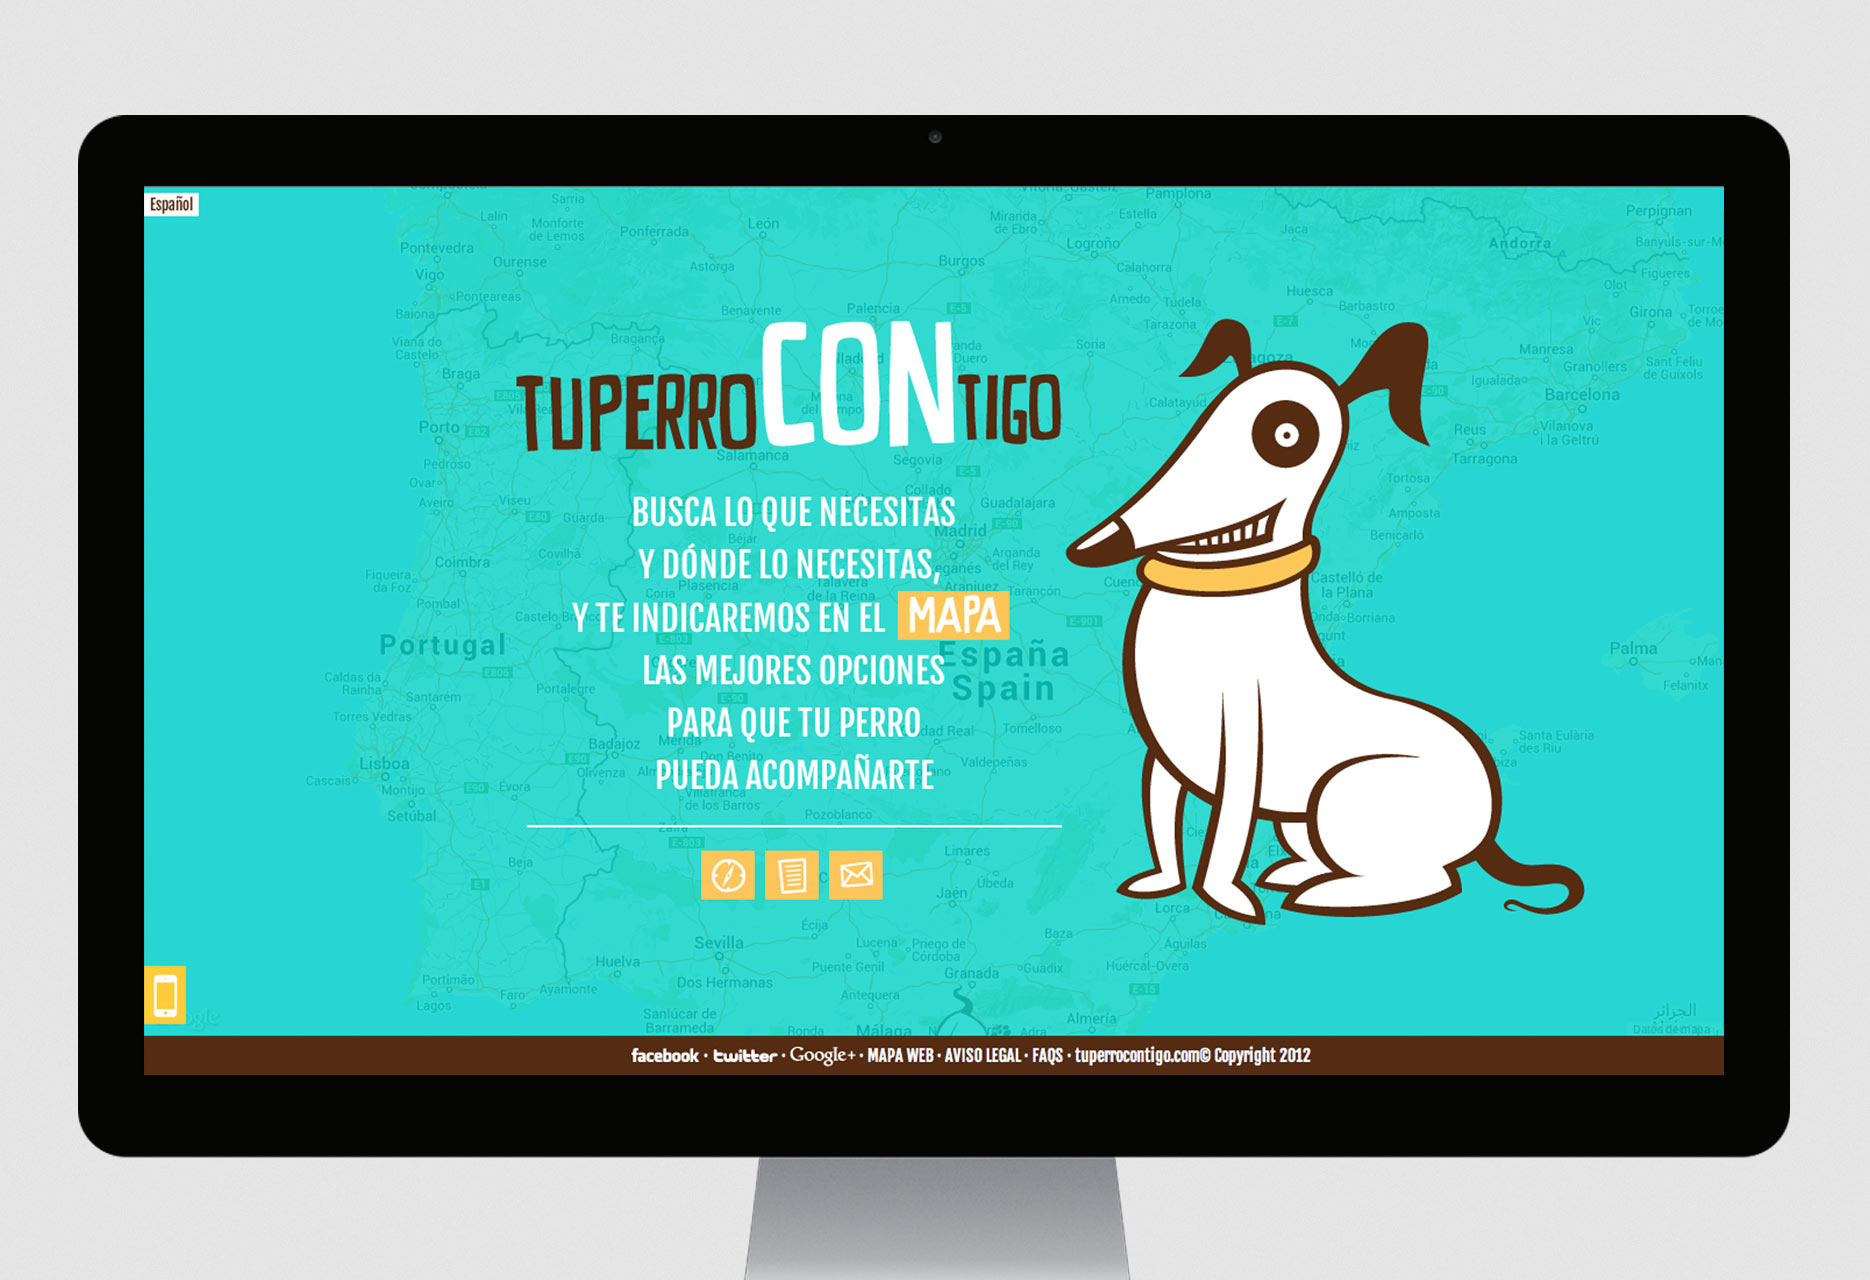 Social net website Tu perro contigo - mobile app / web development / responsive design / web design / CMS - 2012